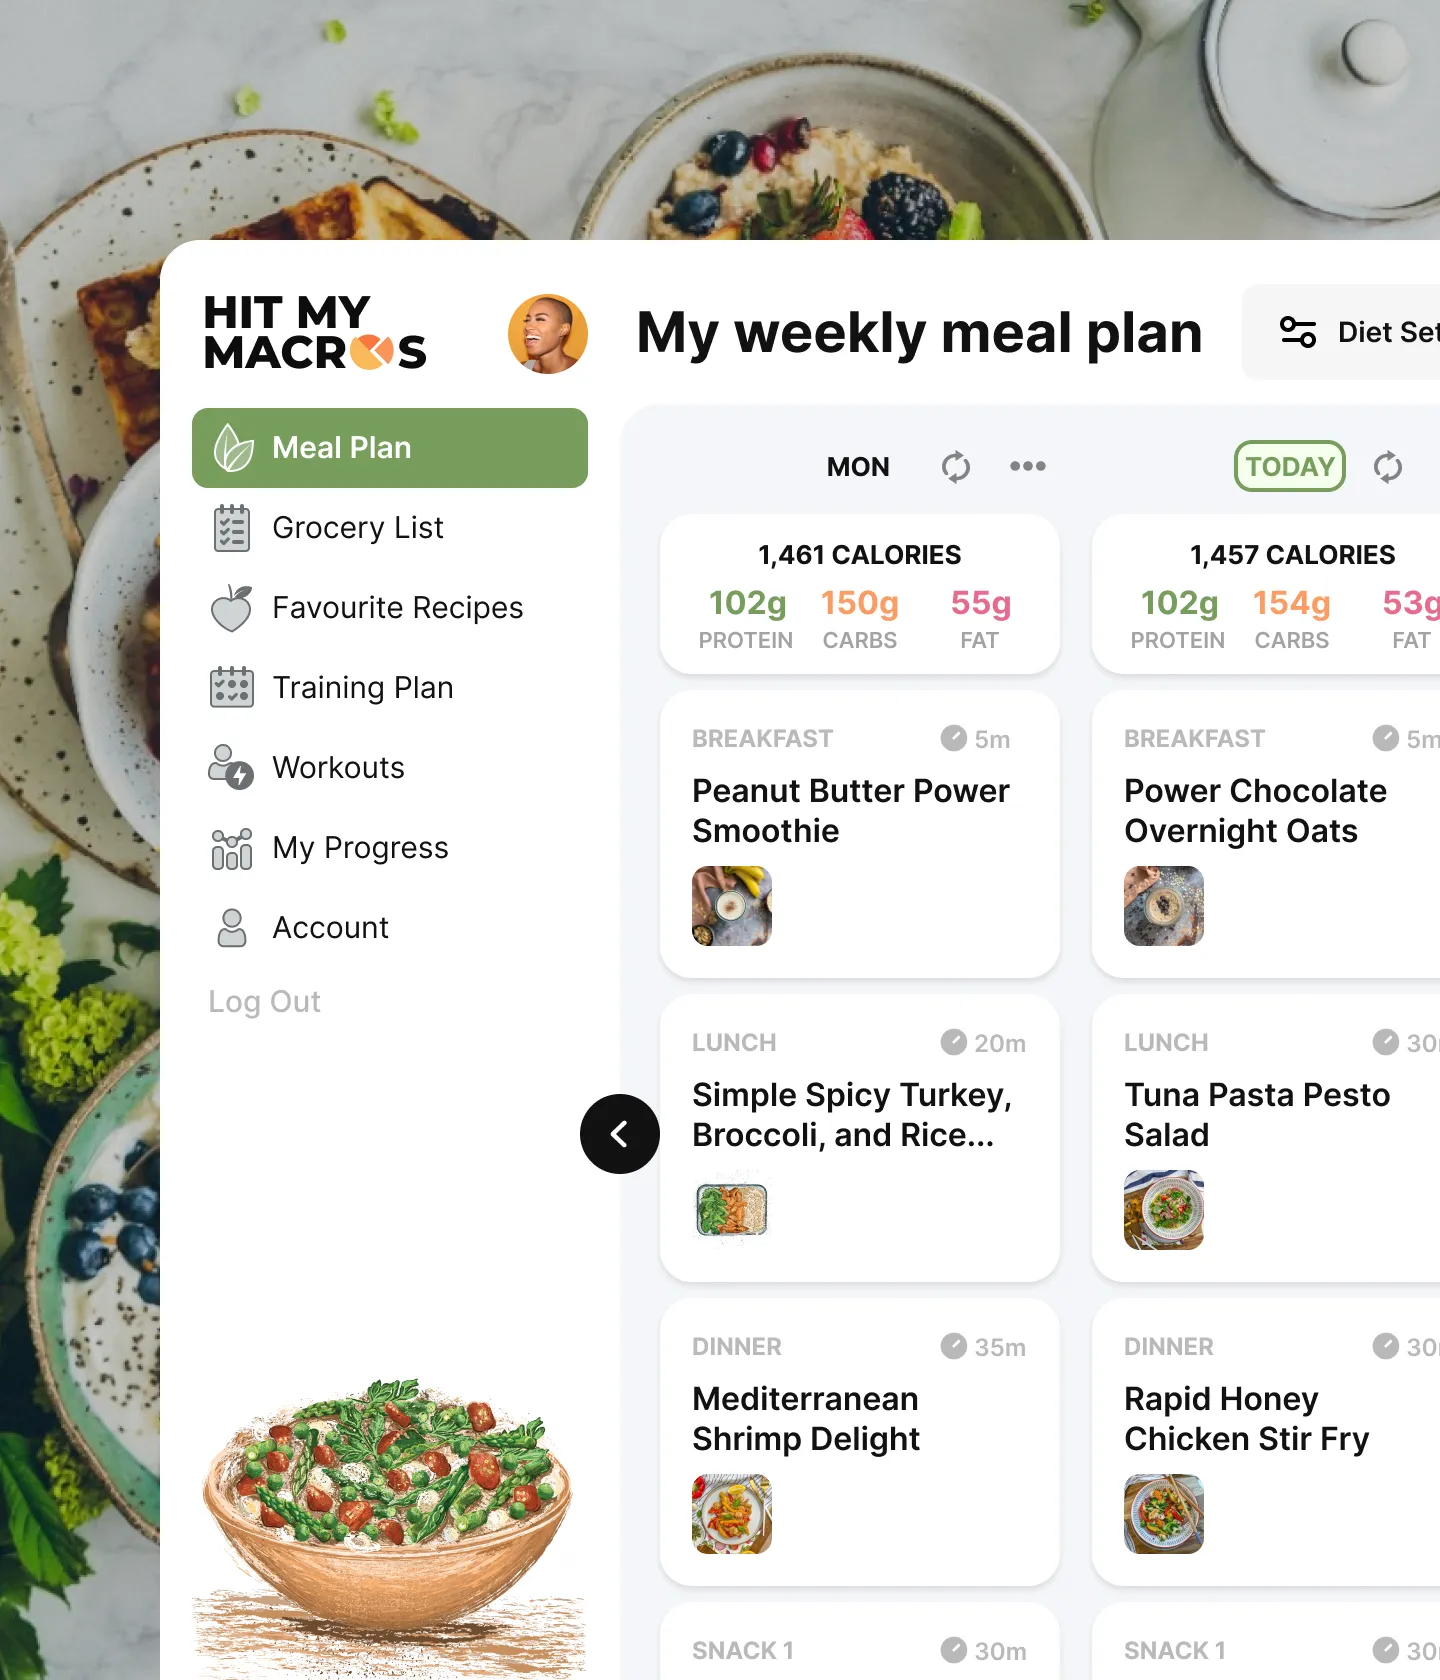 meal plan generator based on macros